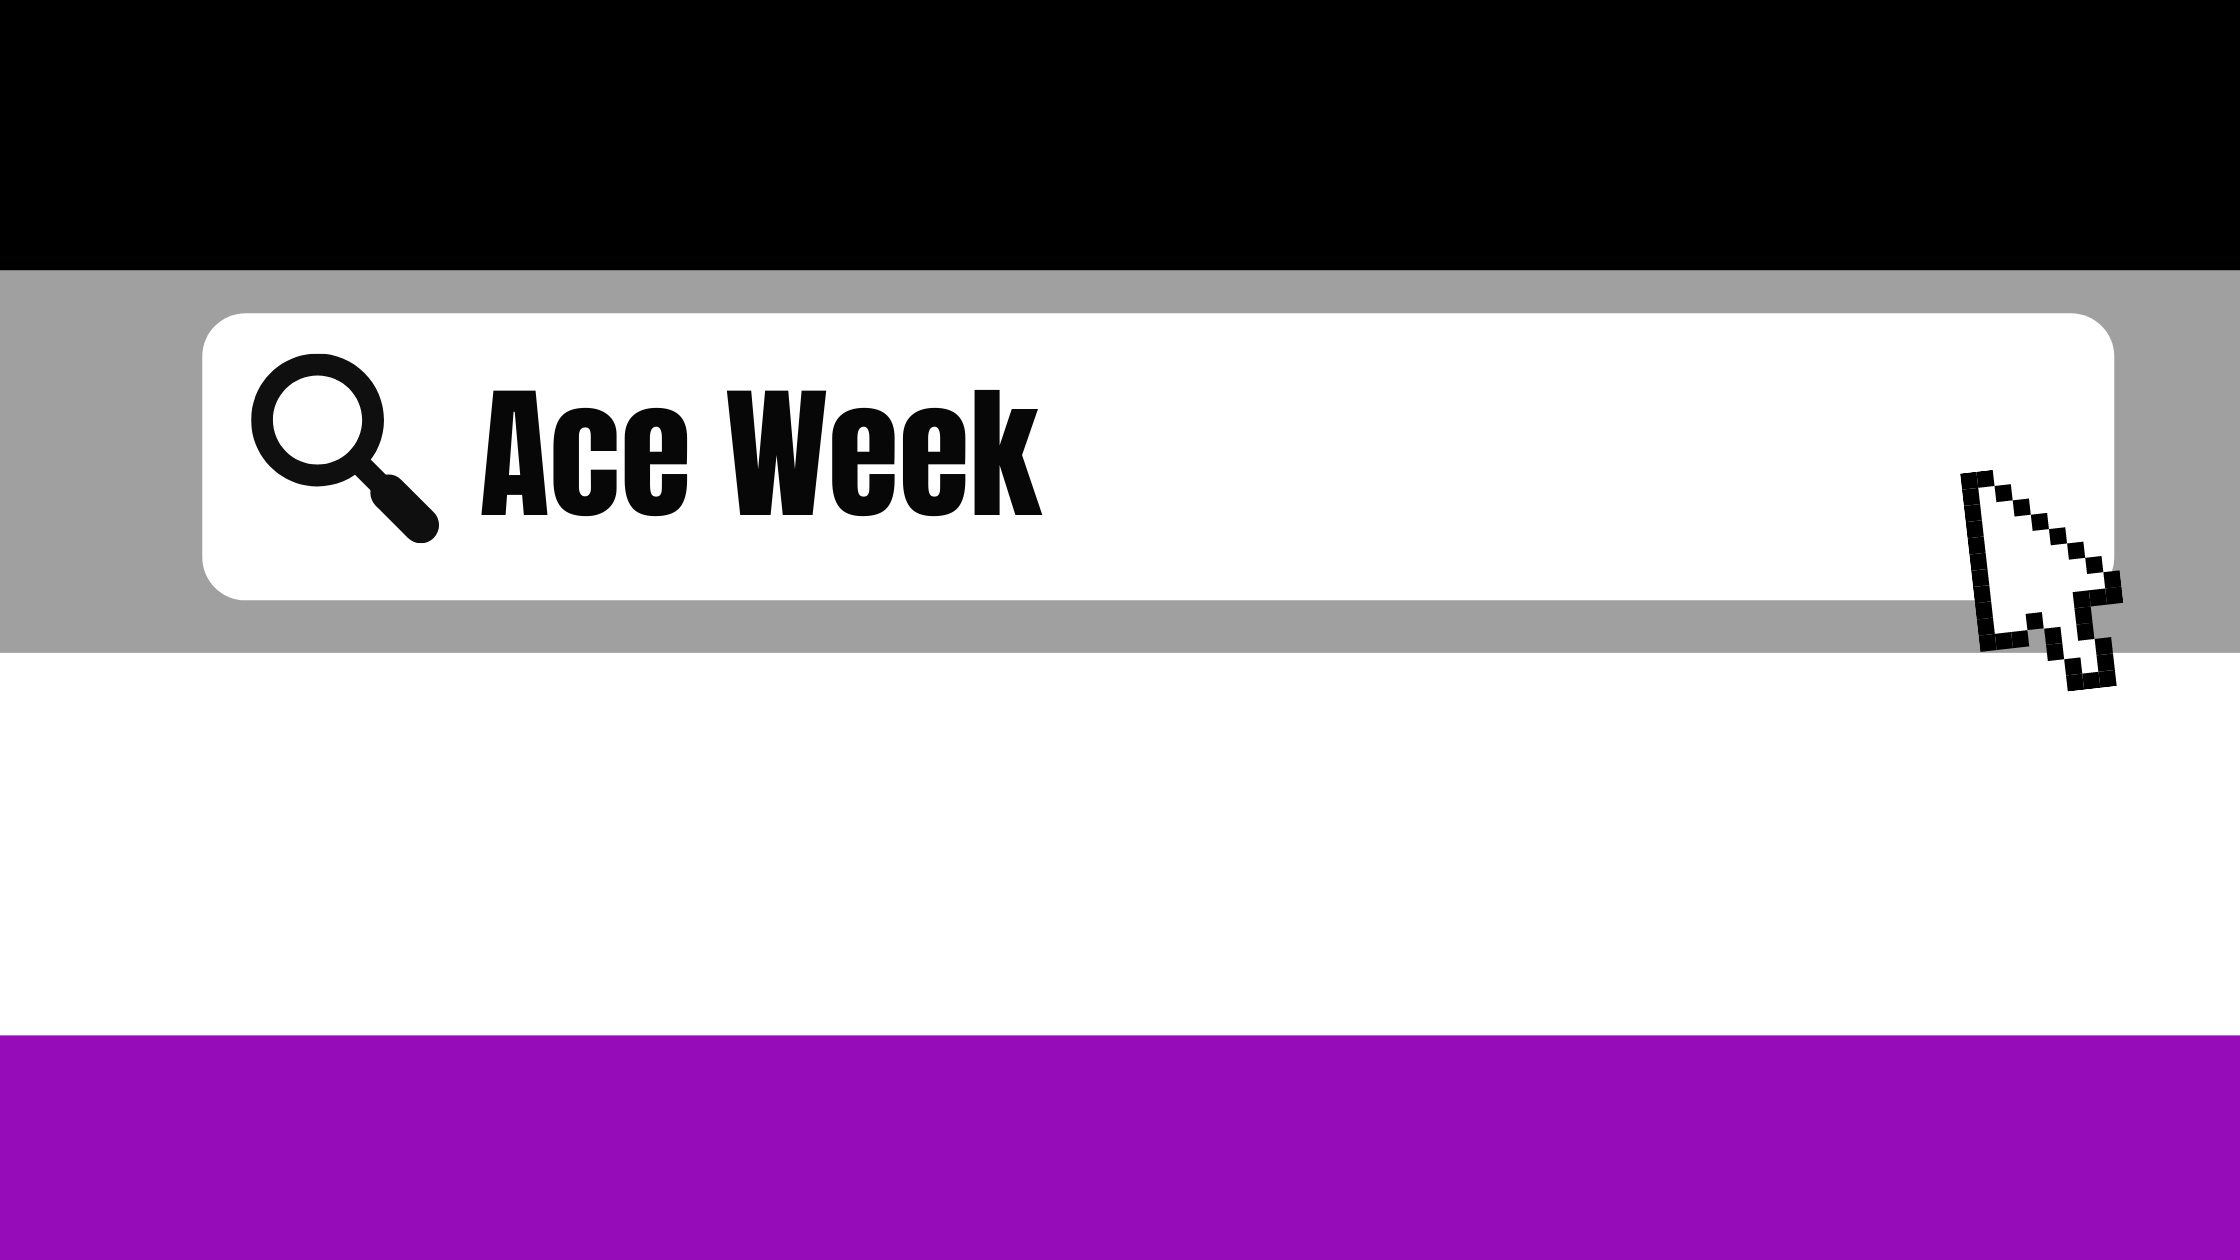 Happy Ace Week!